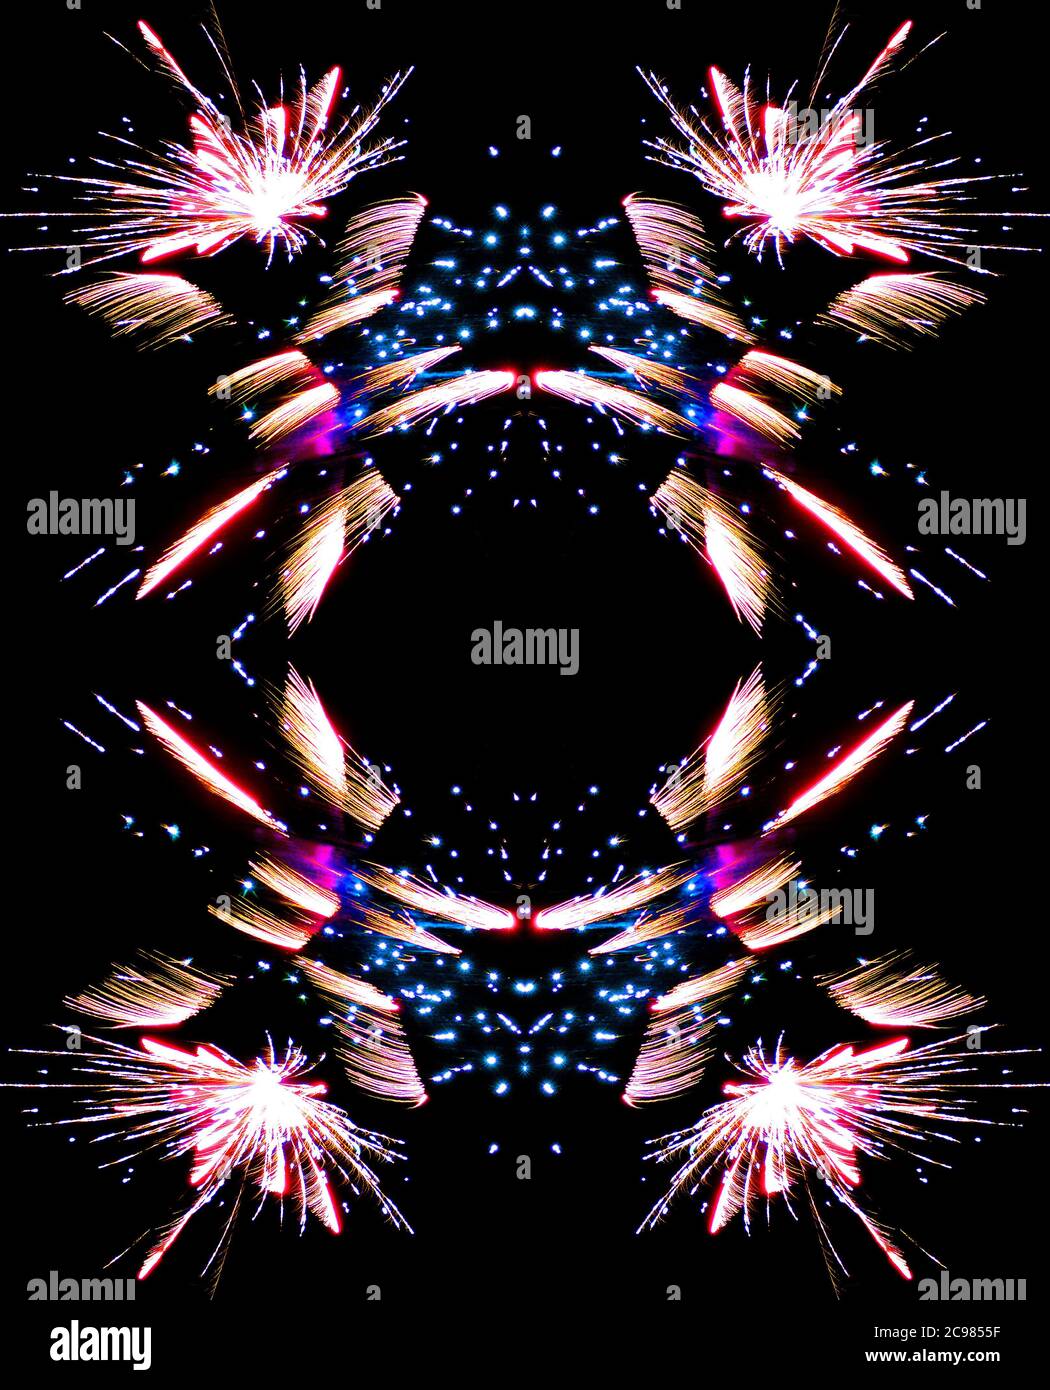 Fuochi d'artificio - pattern ripetitivo realizzato da un'immagine riflessa digitalmente di fuochi d'artificio che esplodono Foto Stock